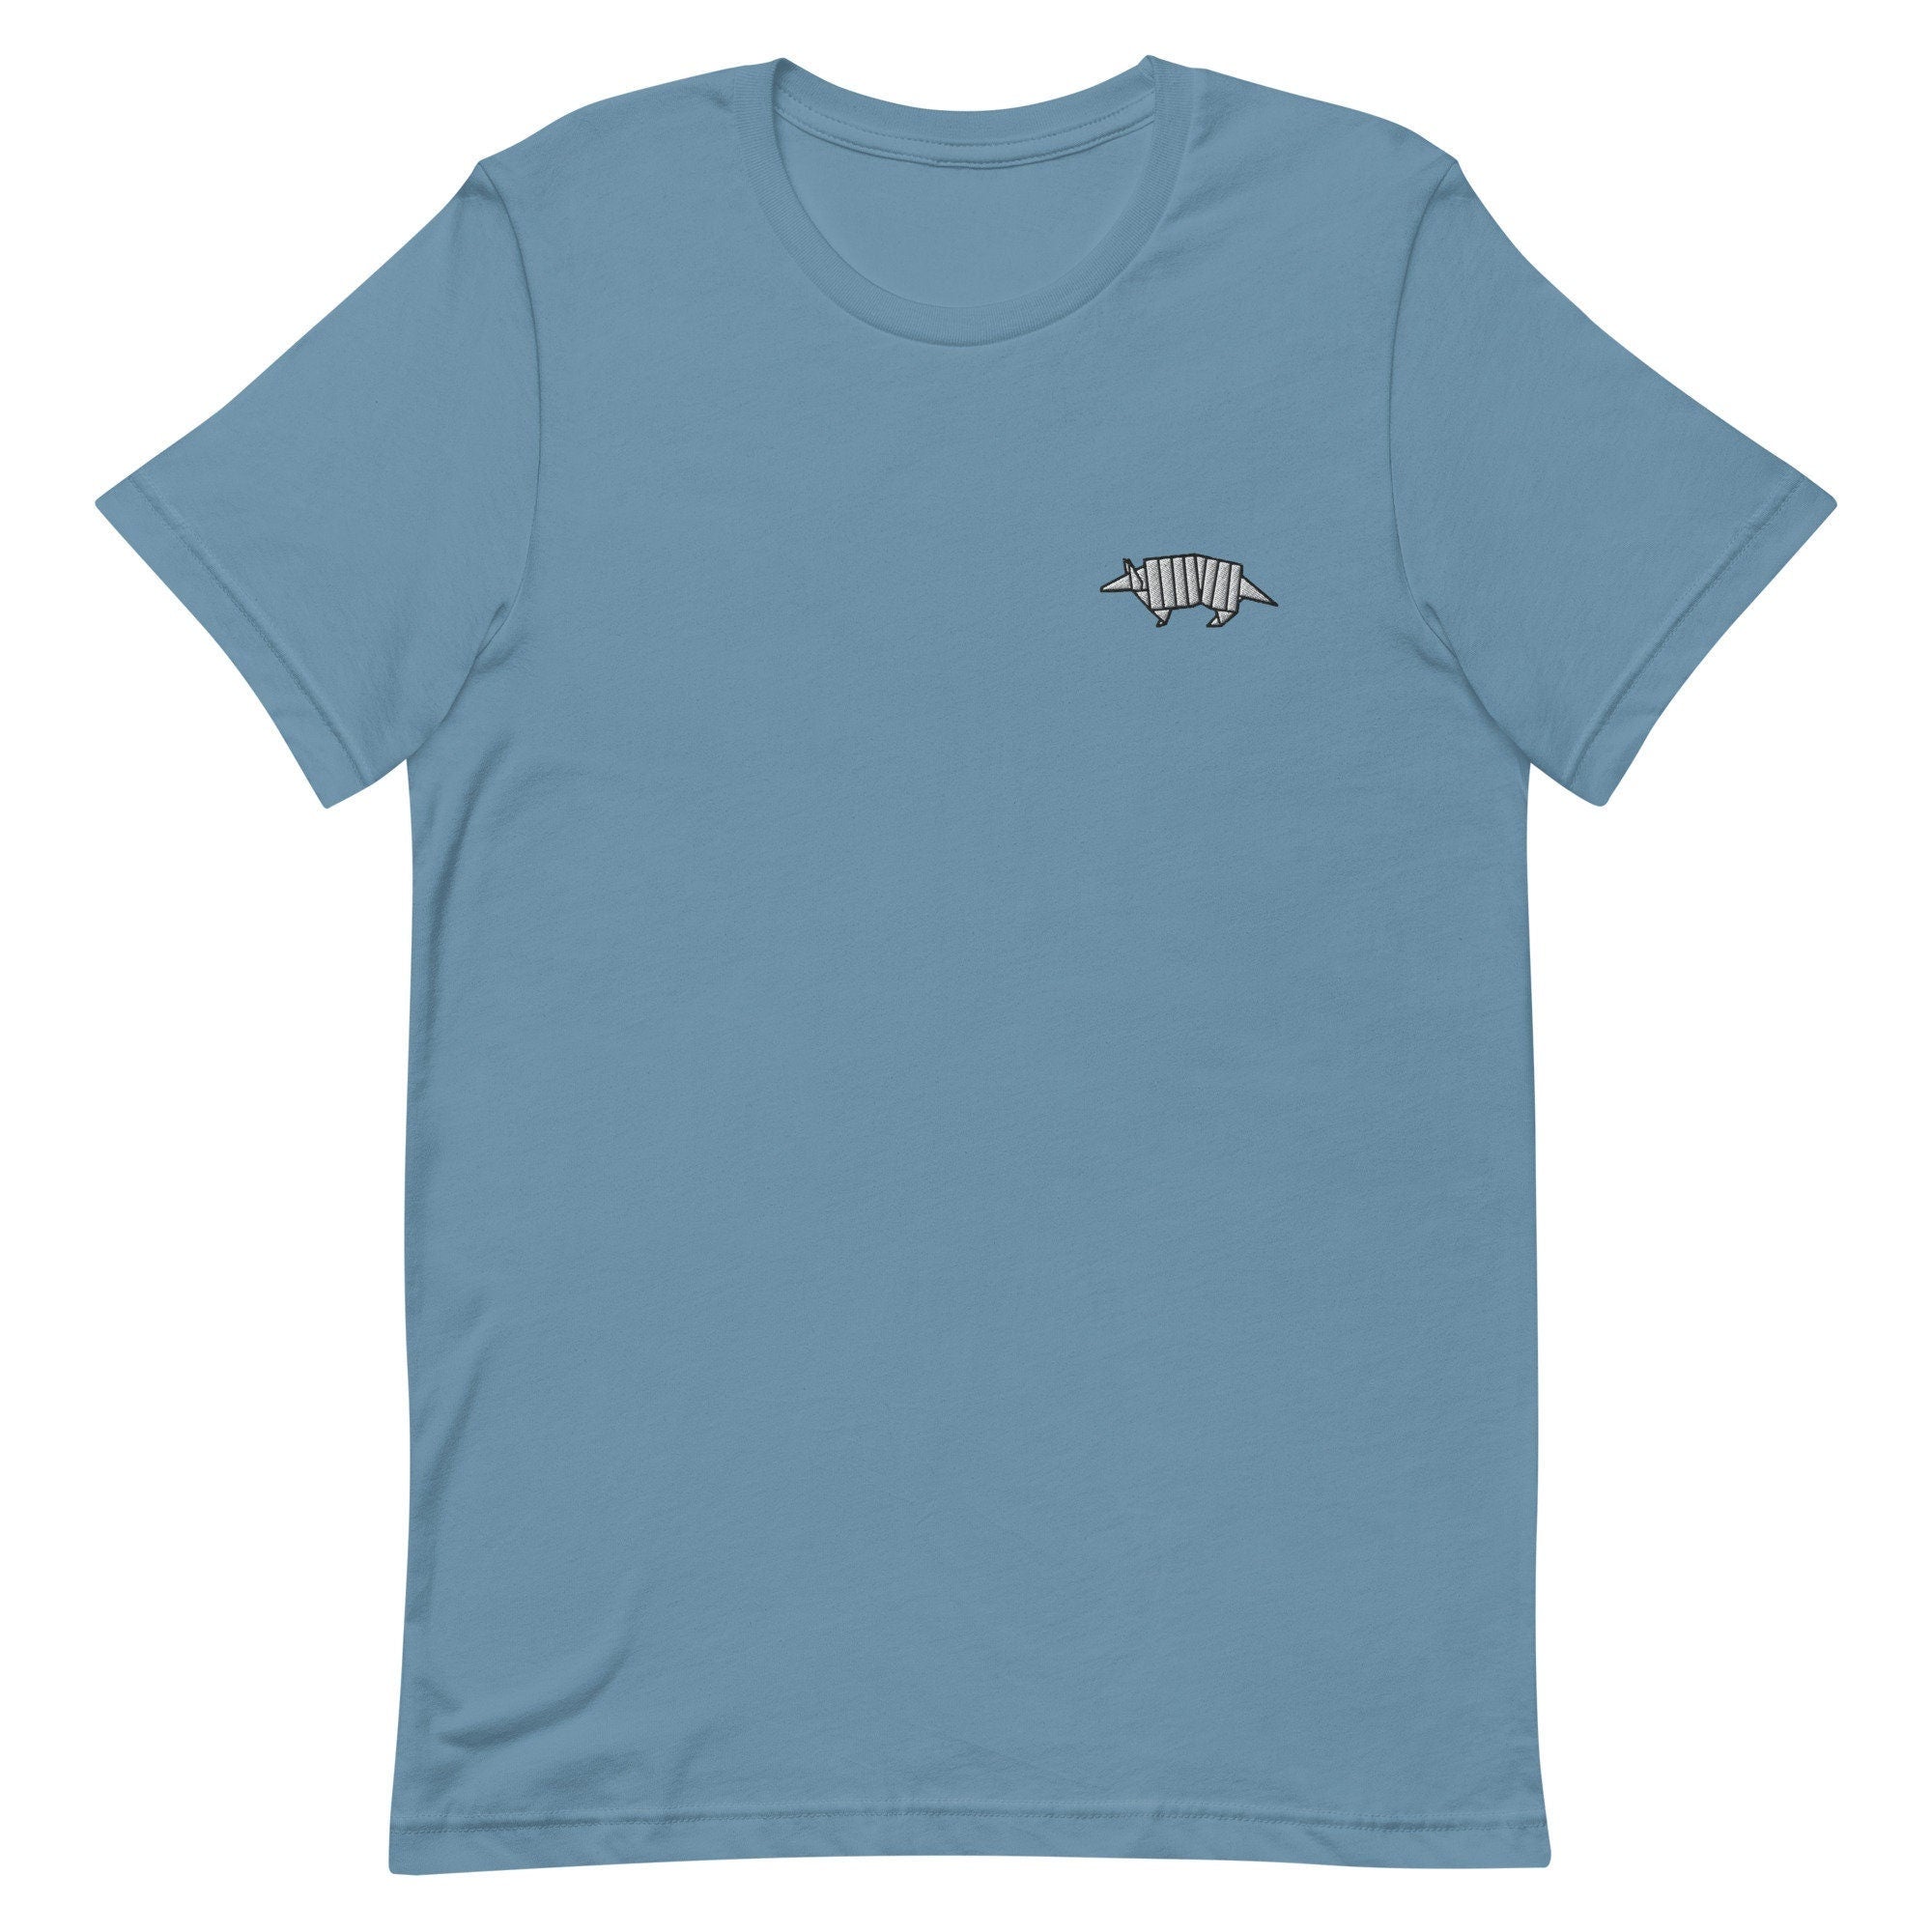 Armadillo Premium Men's T-Shirt, Embroidered Men's T-Shirt Gift for Boyfriend, Men's Short Sleeve Shirt - Multiple Colors